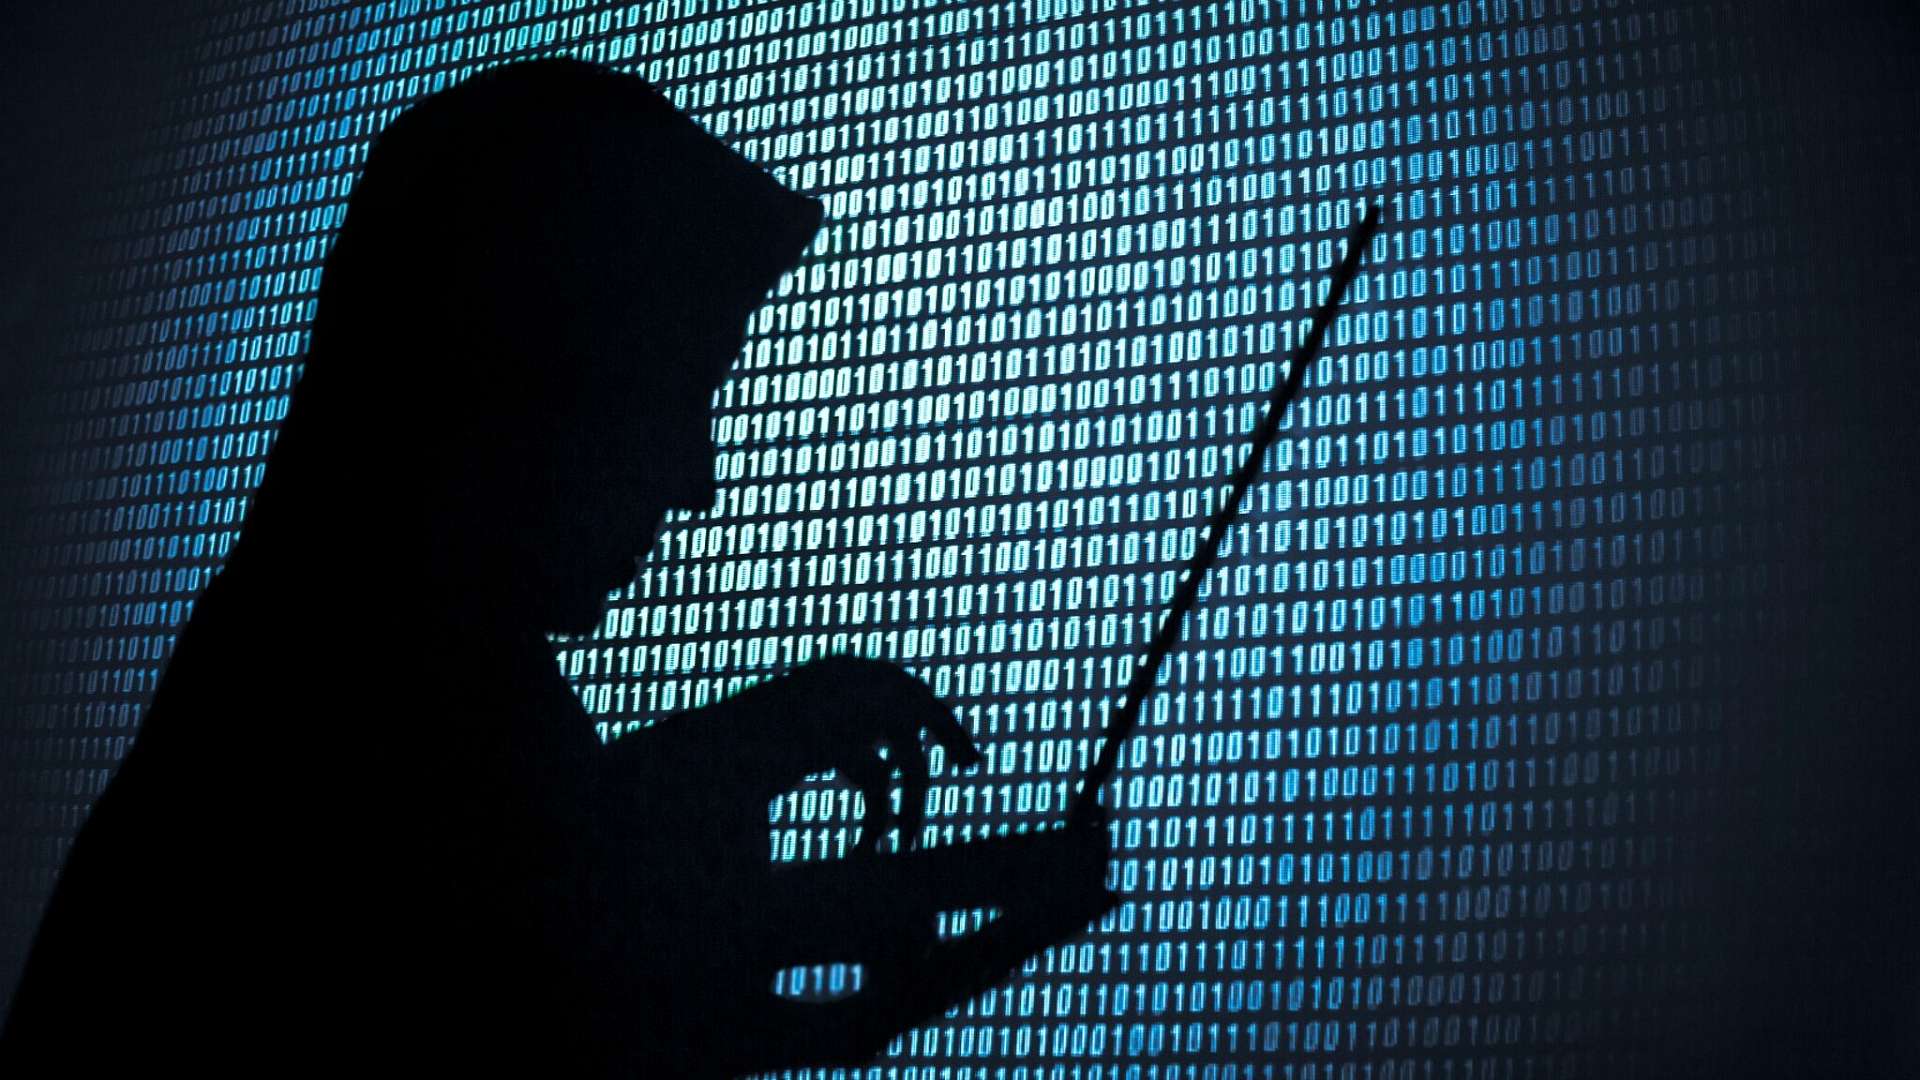 Kolejny dzień, kolejny napad na kryptowaluty: 182 miliony dolarów znika wraz z hackiem Beanstalk